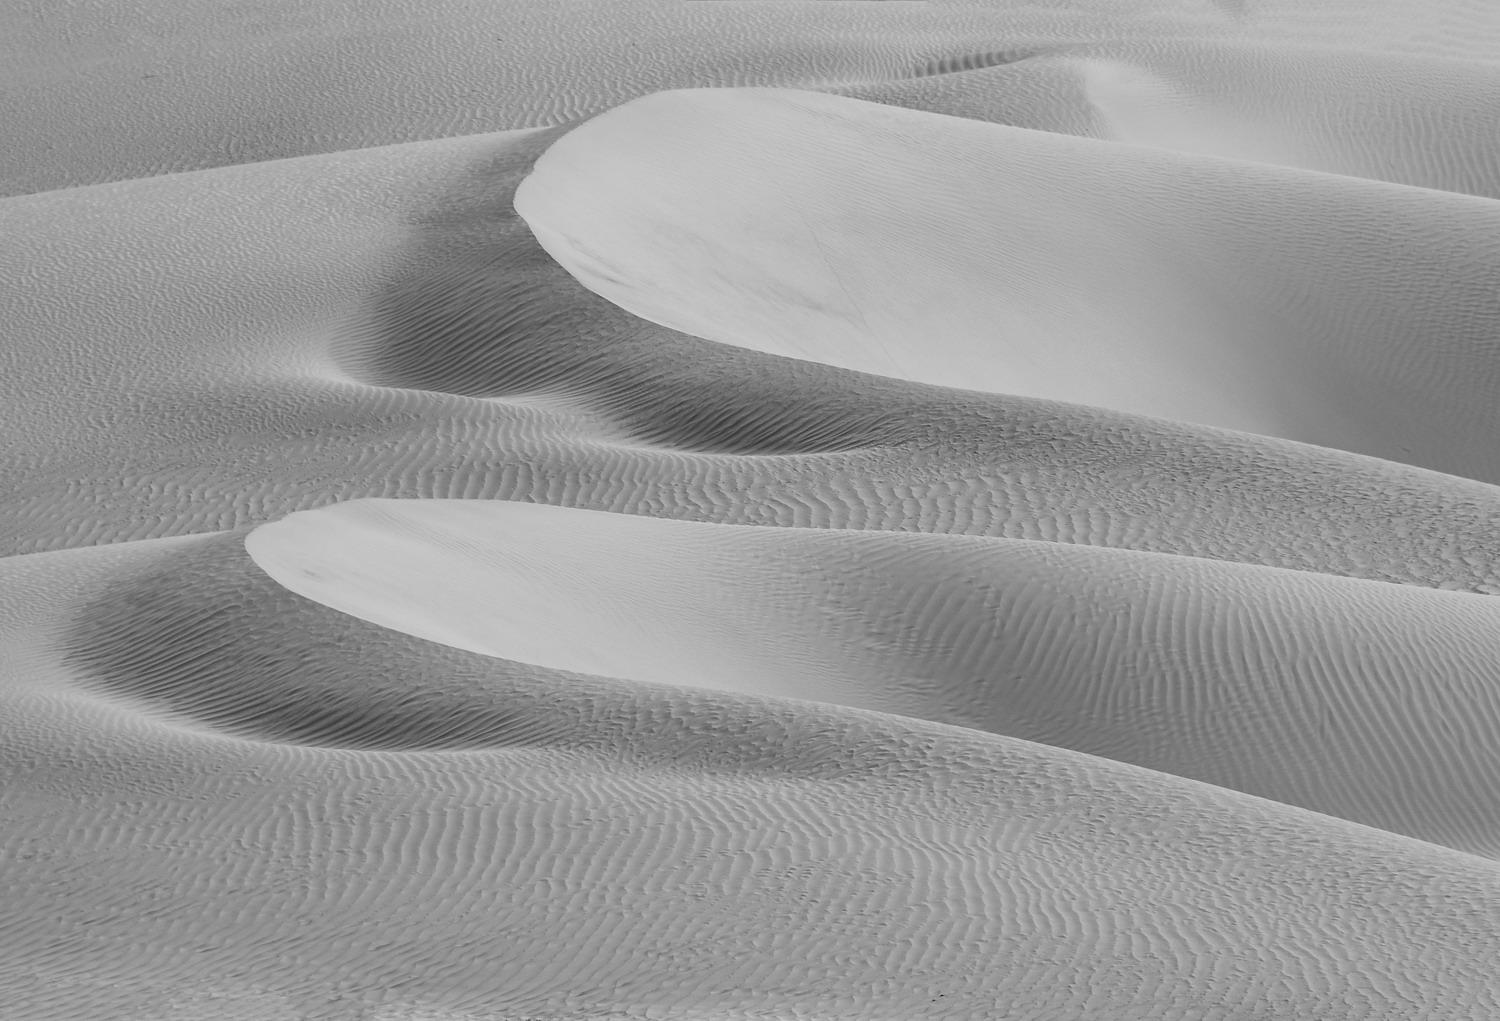 DSC_7712_1A2 - Sand Dunes (Hunder)